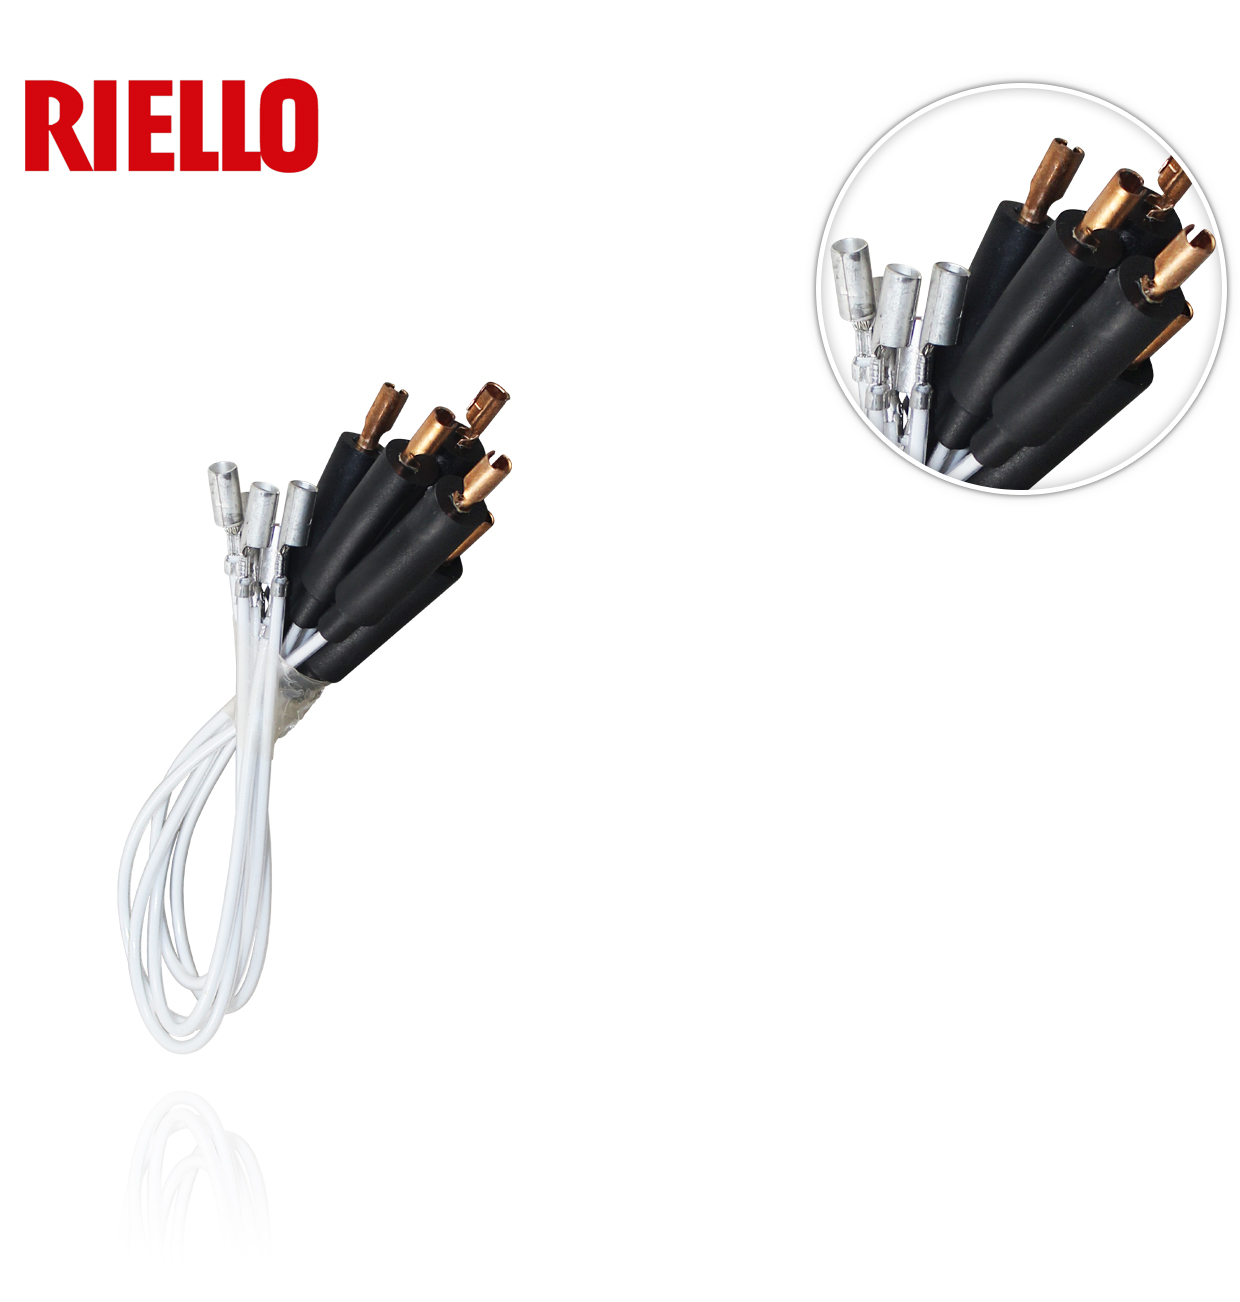 CABLE CONEXION ELECTRODO RIELLO 3002353